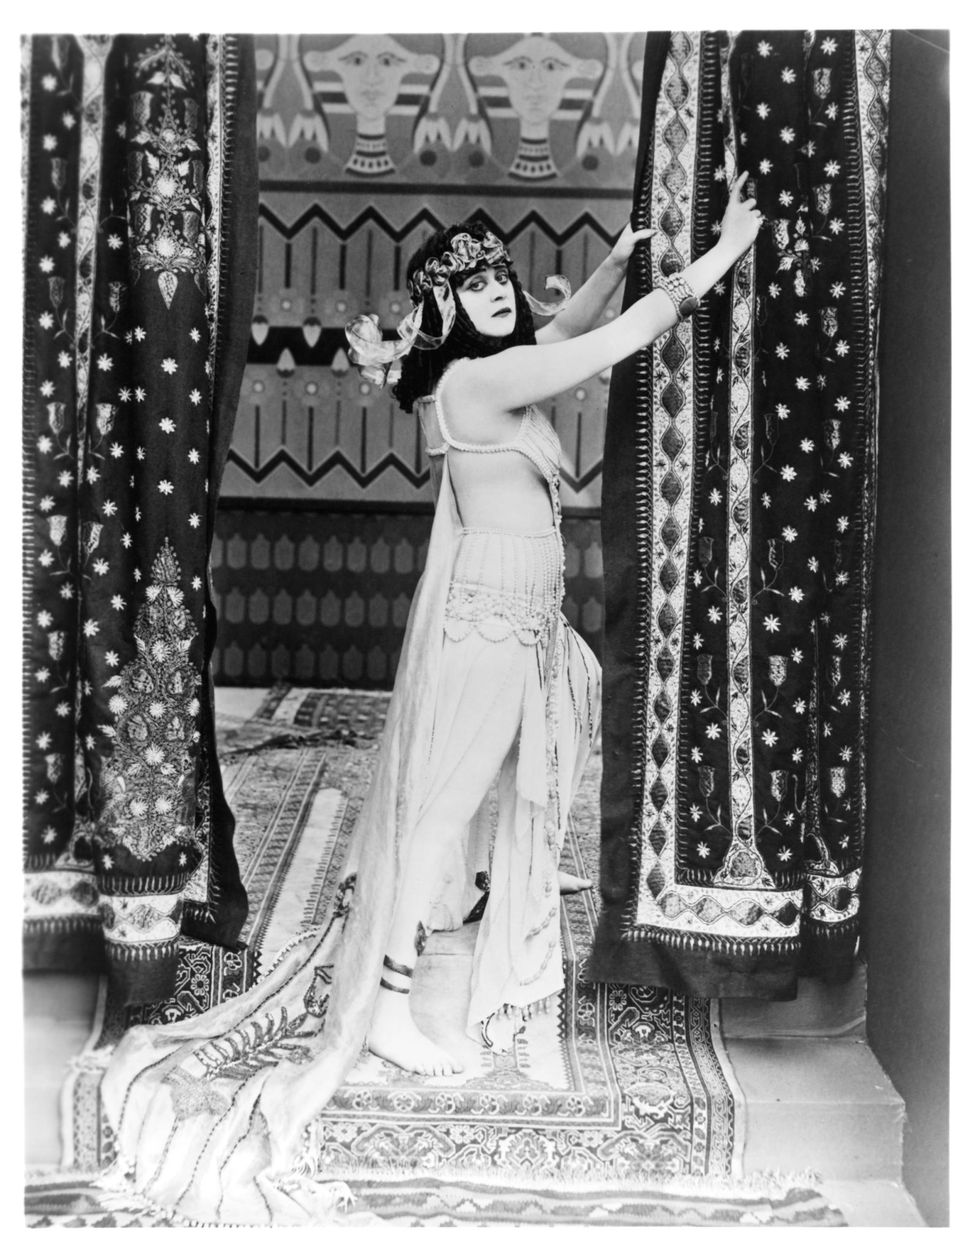 <p>De actrice Theda Bara —  femme fatale en één van Hollywoods eerste sekssymbolen —  werd bekend door haar titelrol in de<br><br>
film Cleopatra (1917) waarin zij heel dure en erotische kostuums droeg -<br><br>
inclusief een slangenbeha die om haar borsten heen gewikkeld zat. De scenes<br><br>
werden uiteindelijk uit de film gehaald vanwege te veel bloot. De film is verloren<br><br>
gegaan tijdens een brand. In een paar musea zijn nog fragmenten van de film te<br><br>
zien. </p>